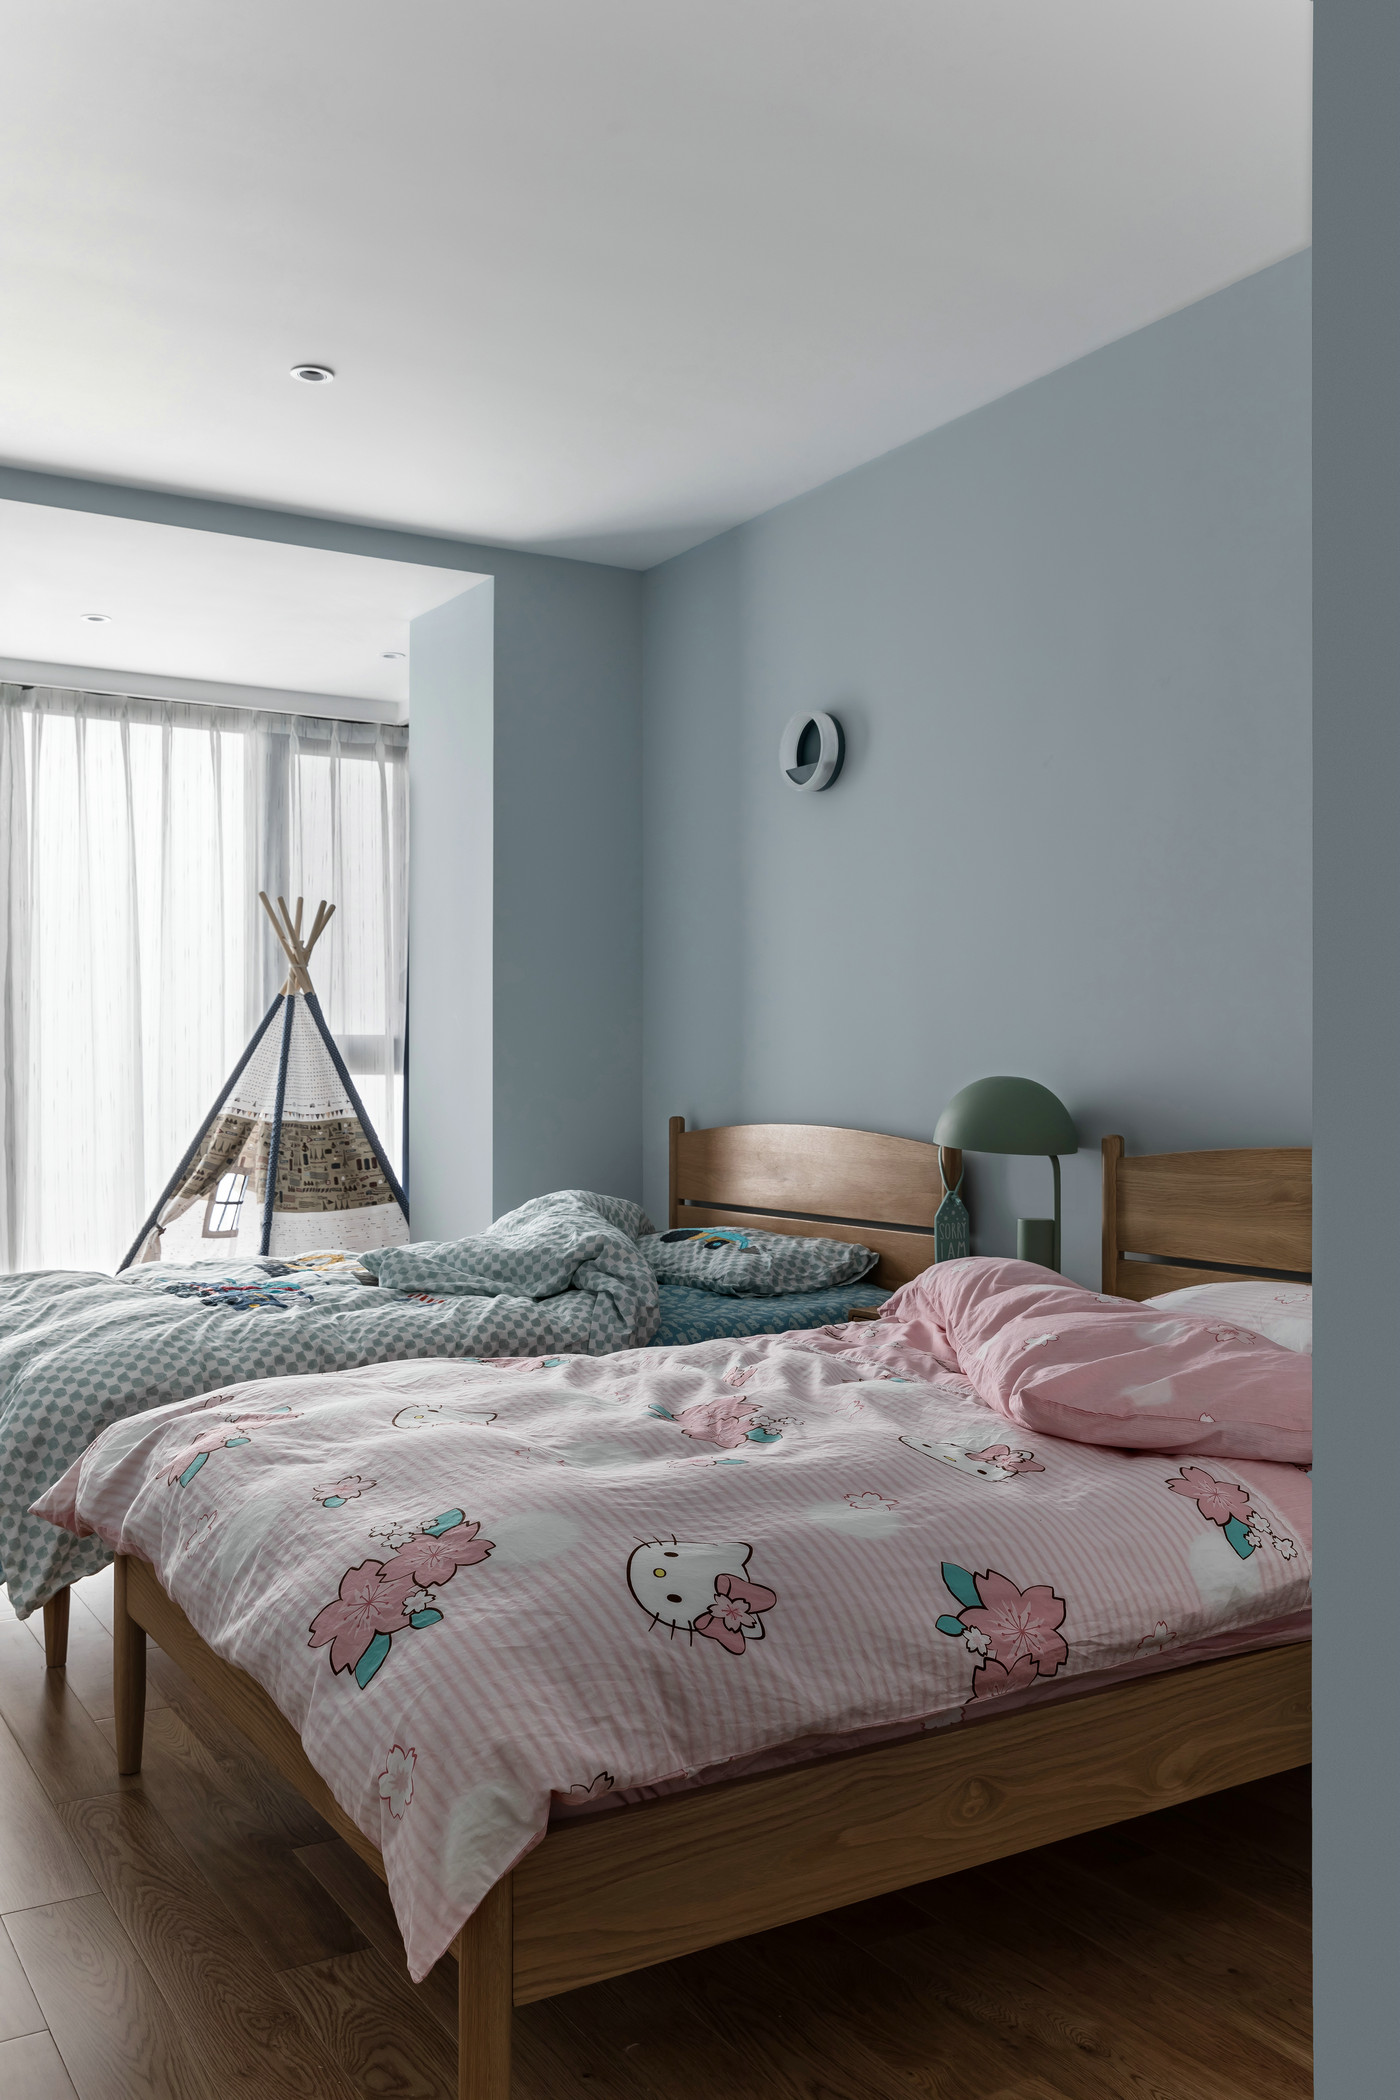 蓝色是整个空间的主题色，搭配蓝粉床品，儿童房呈现出干净、温馨的视觉氛围。